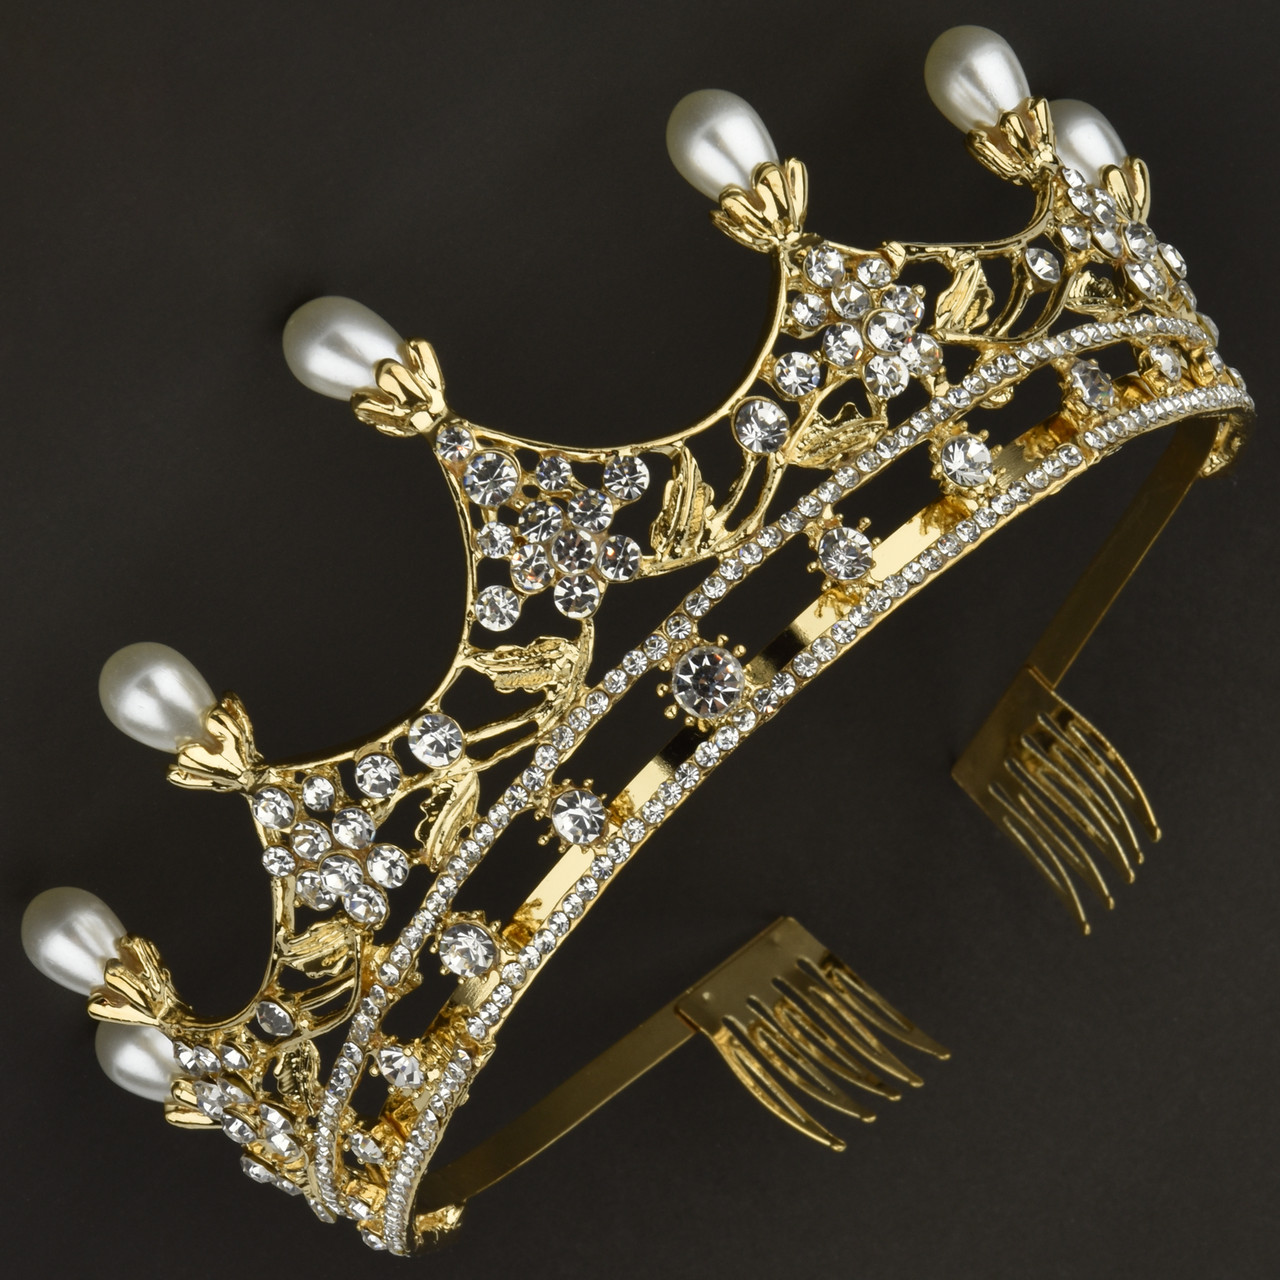 Корона діадема висота 6,5 см на металевій основі золотистого кольору з гребінцями в стразах із перлинами